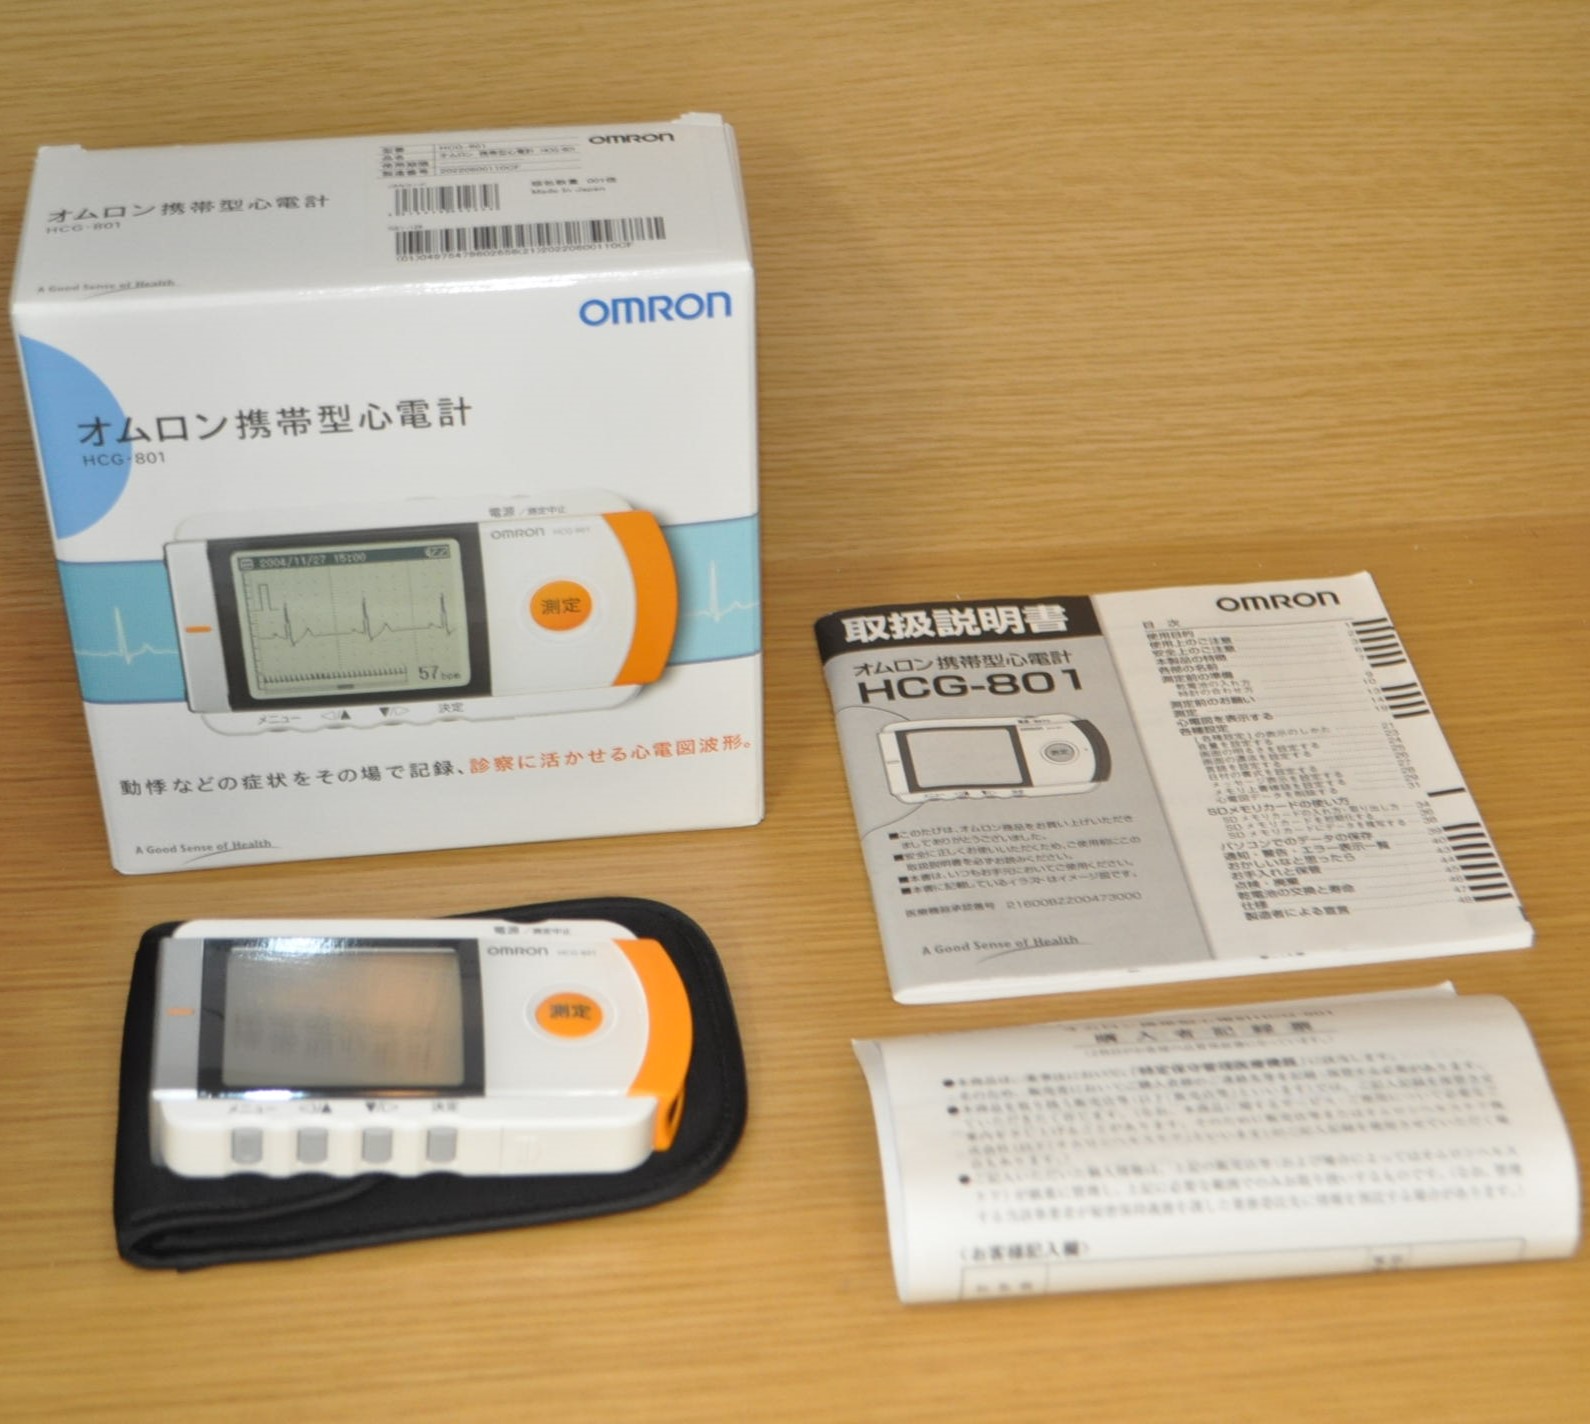 ☆販売価格 14,800円☆ OMRON オムロン 携帯型心電計 HCG-801 入荷